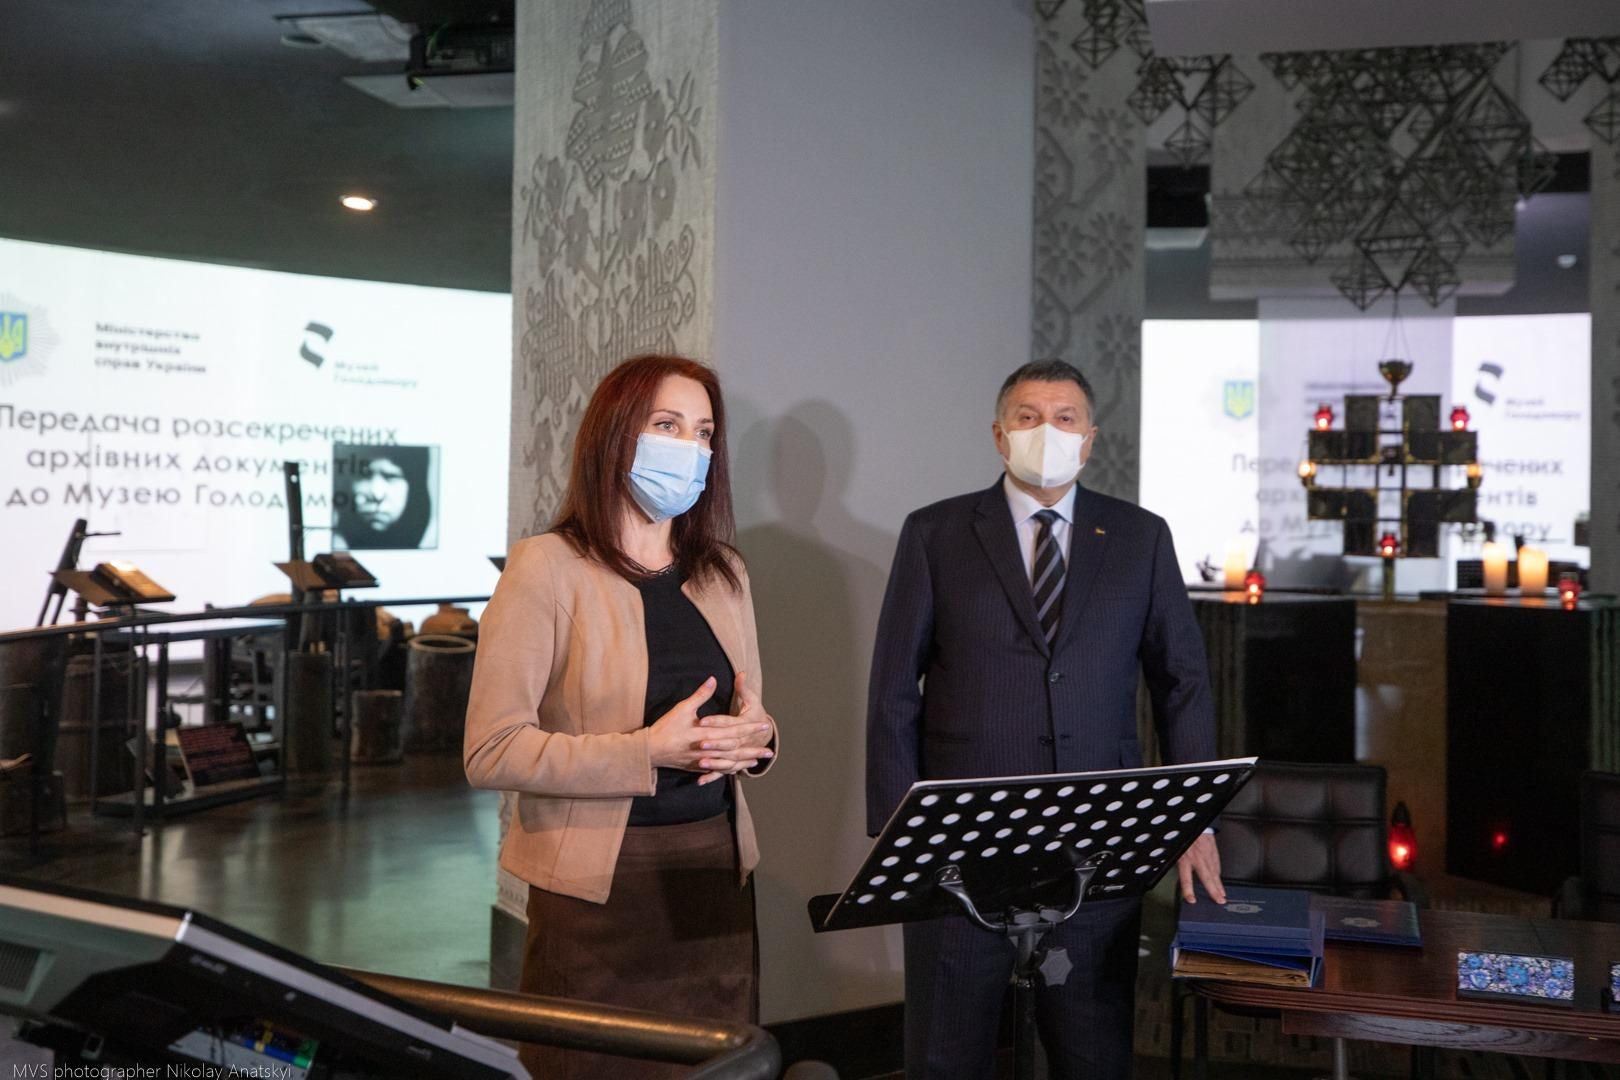 МВС відкрило архіви кримінальних справ про Голодомор: відео 